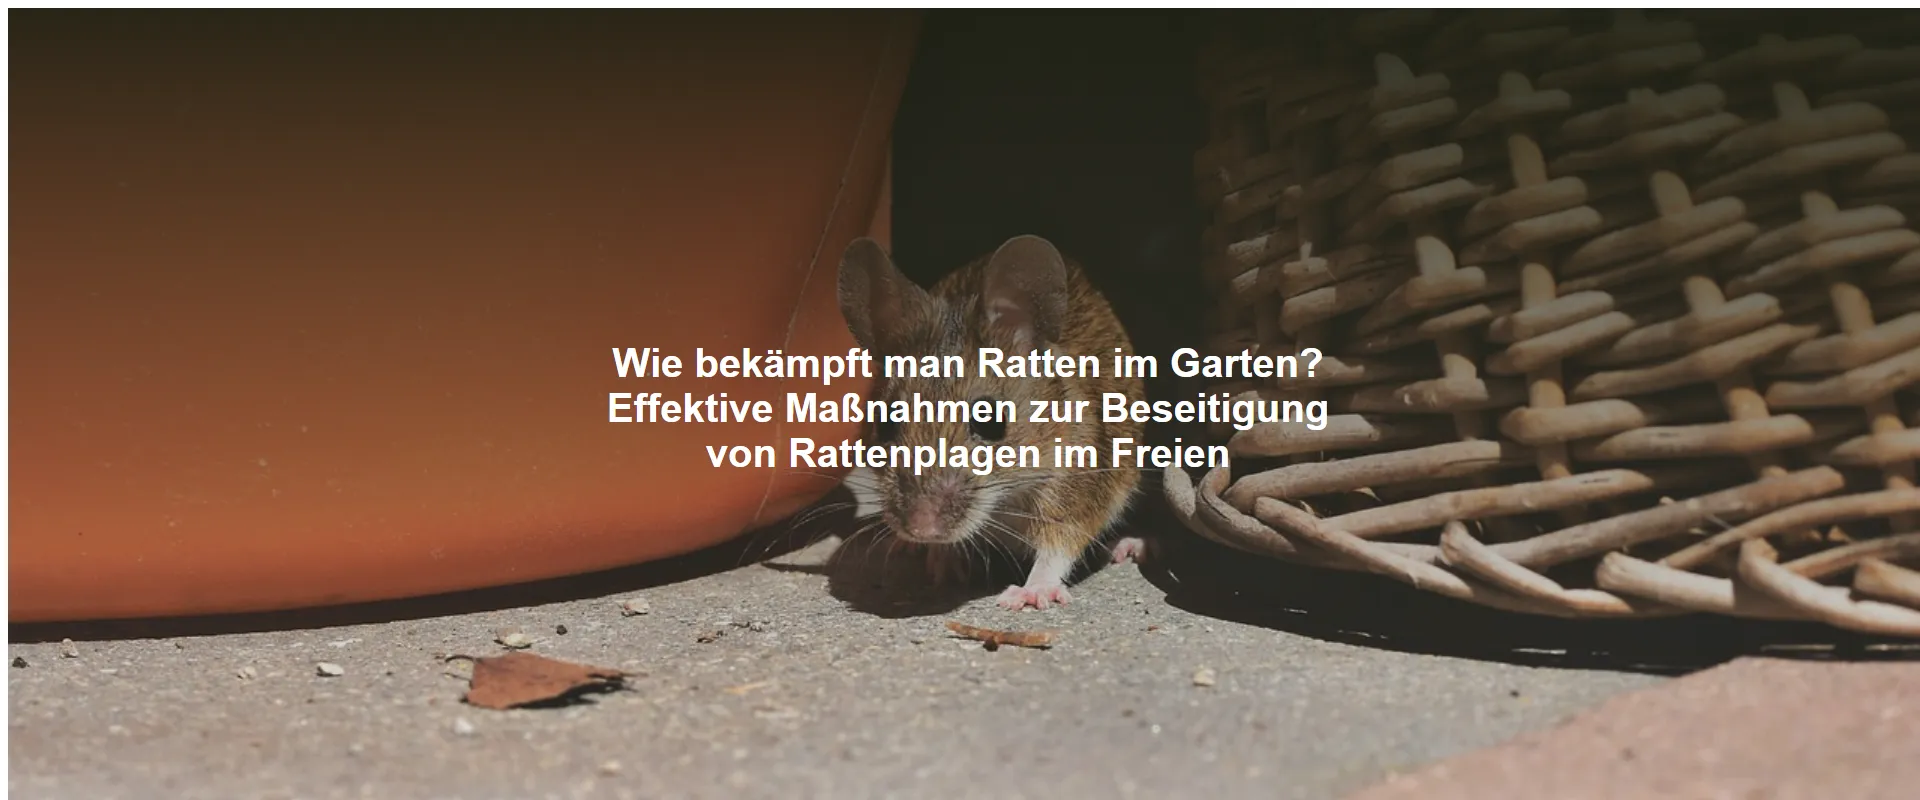 Wie bekämpft man Ratten im Garten? Effektive Maßnahmen zur Beseitigung von Rattenplagen im Freien